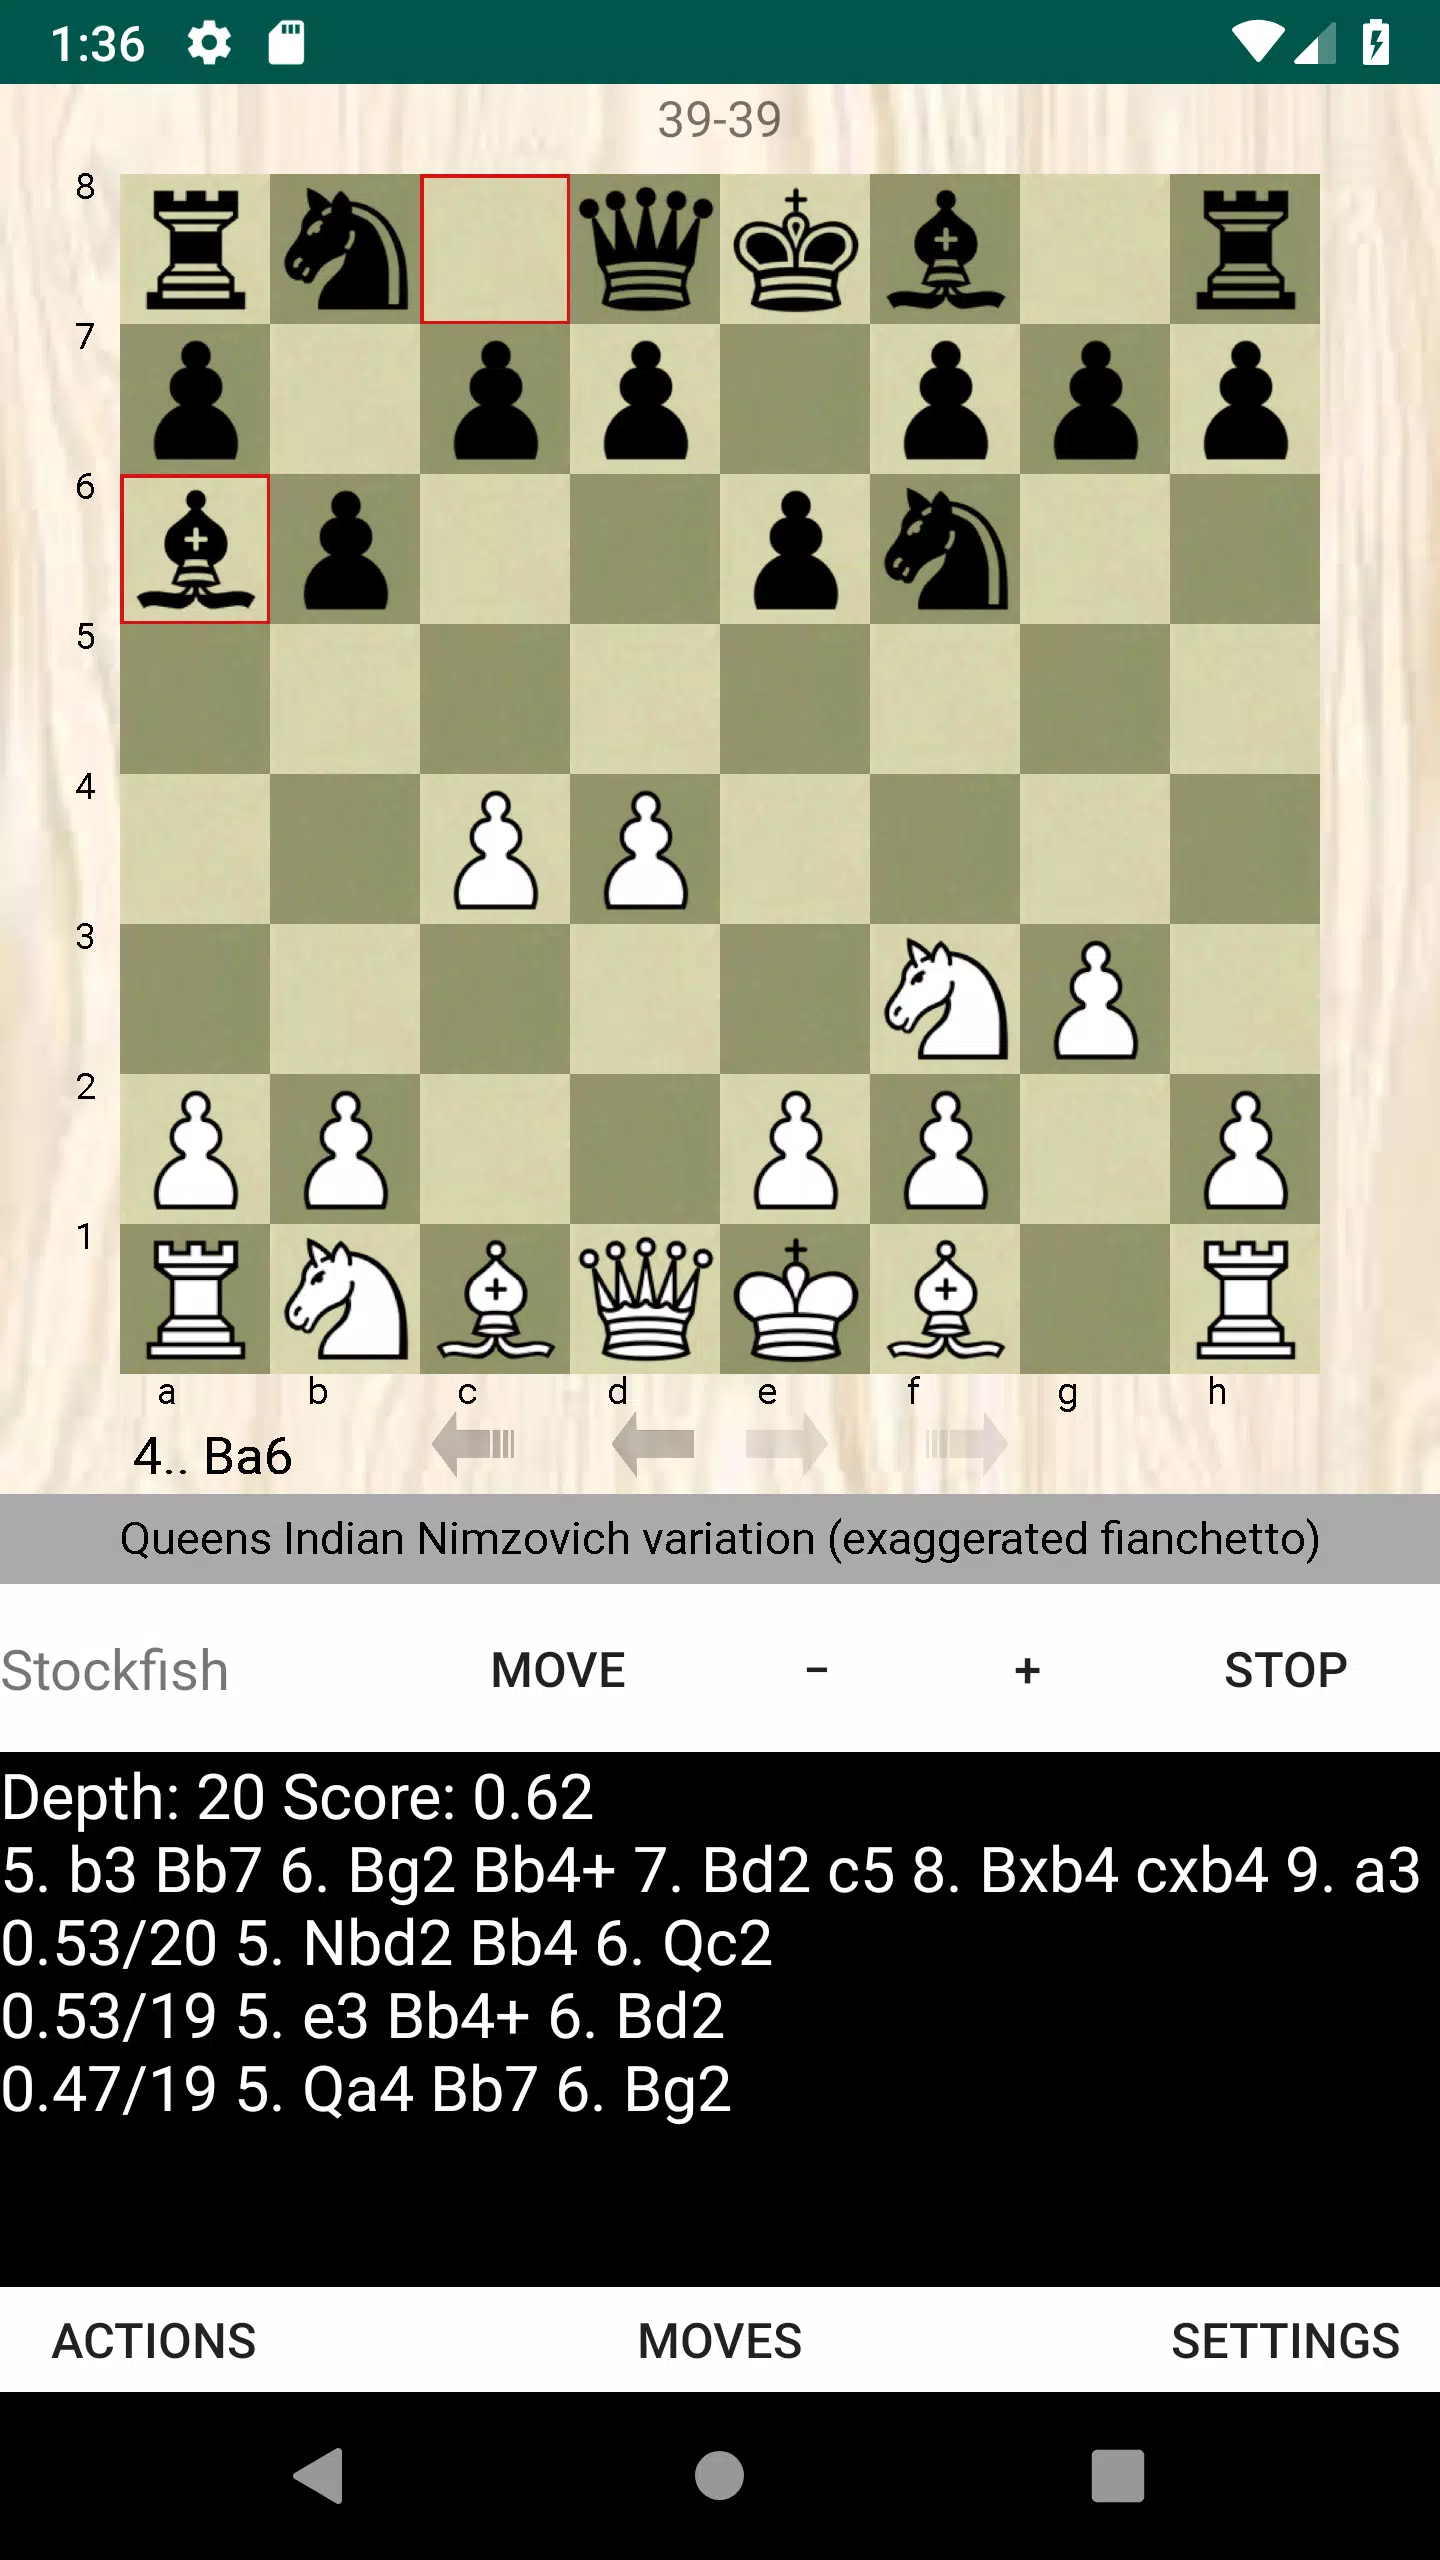 Chess Openings App Demo v. 1.3 